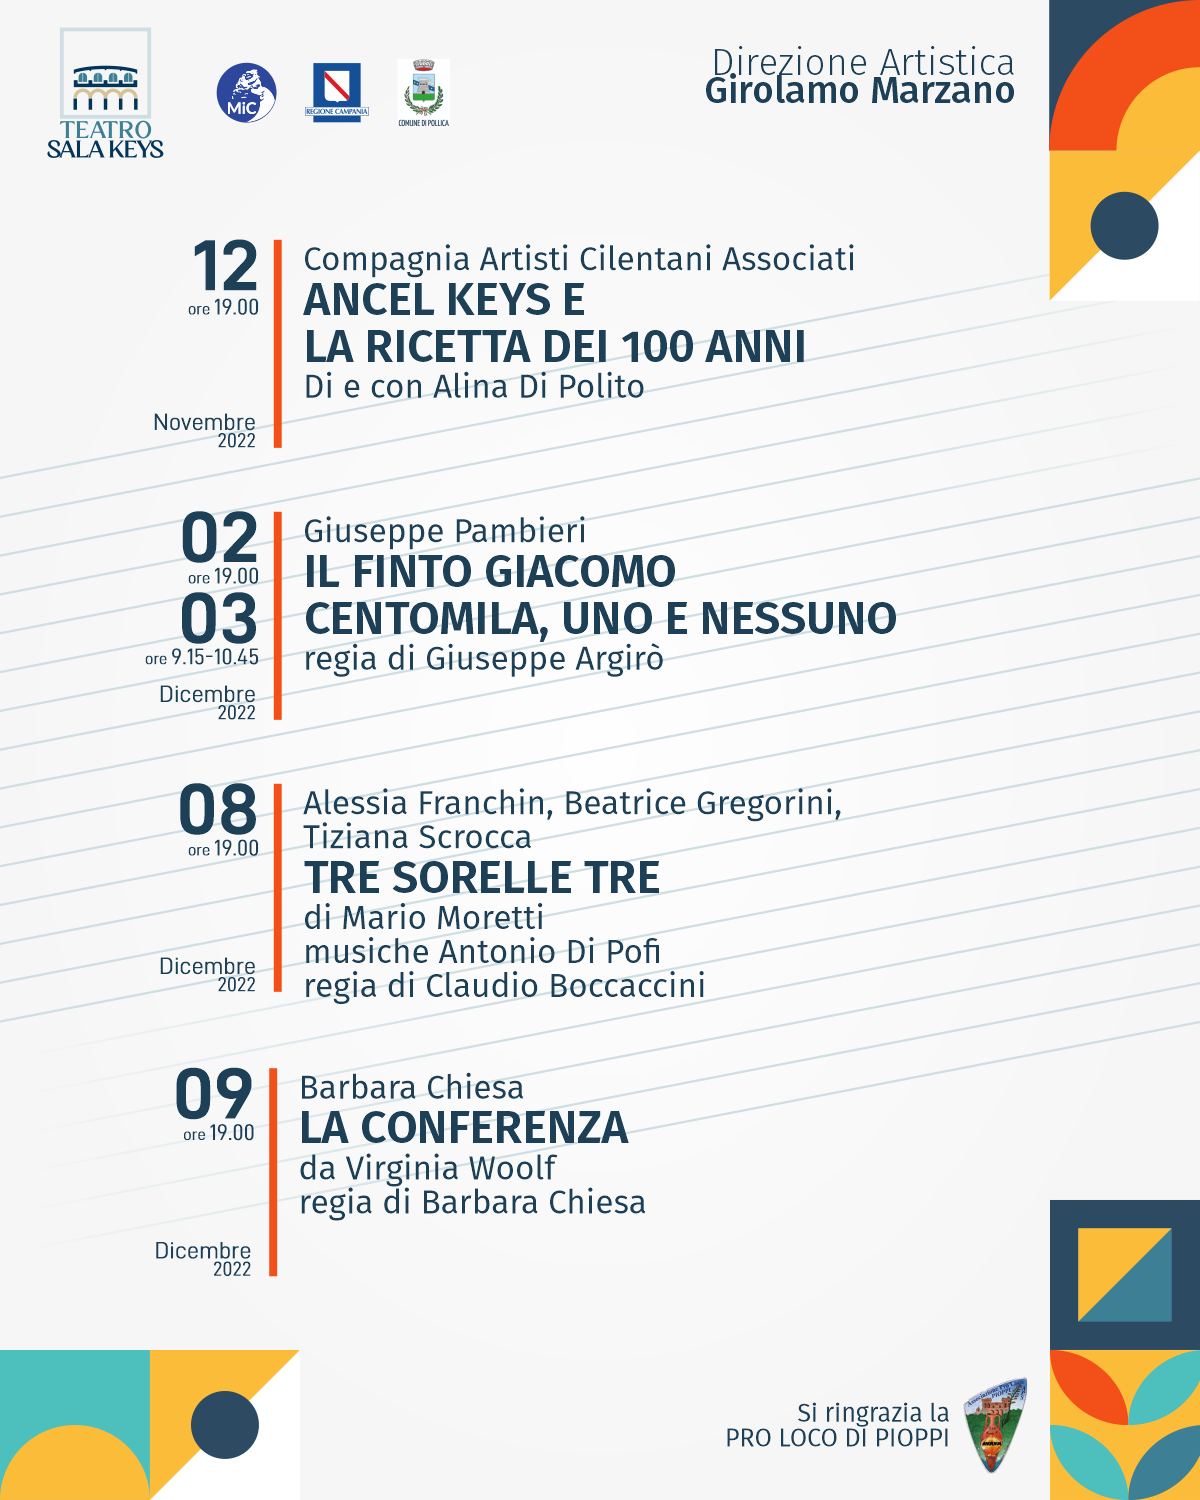 Cilento-Festival-Pollica-2022-Pioppi-Cilento-Spettacoli-teatro-programma-1